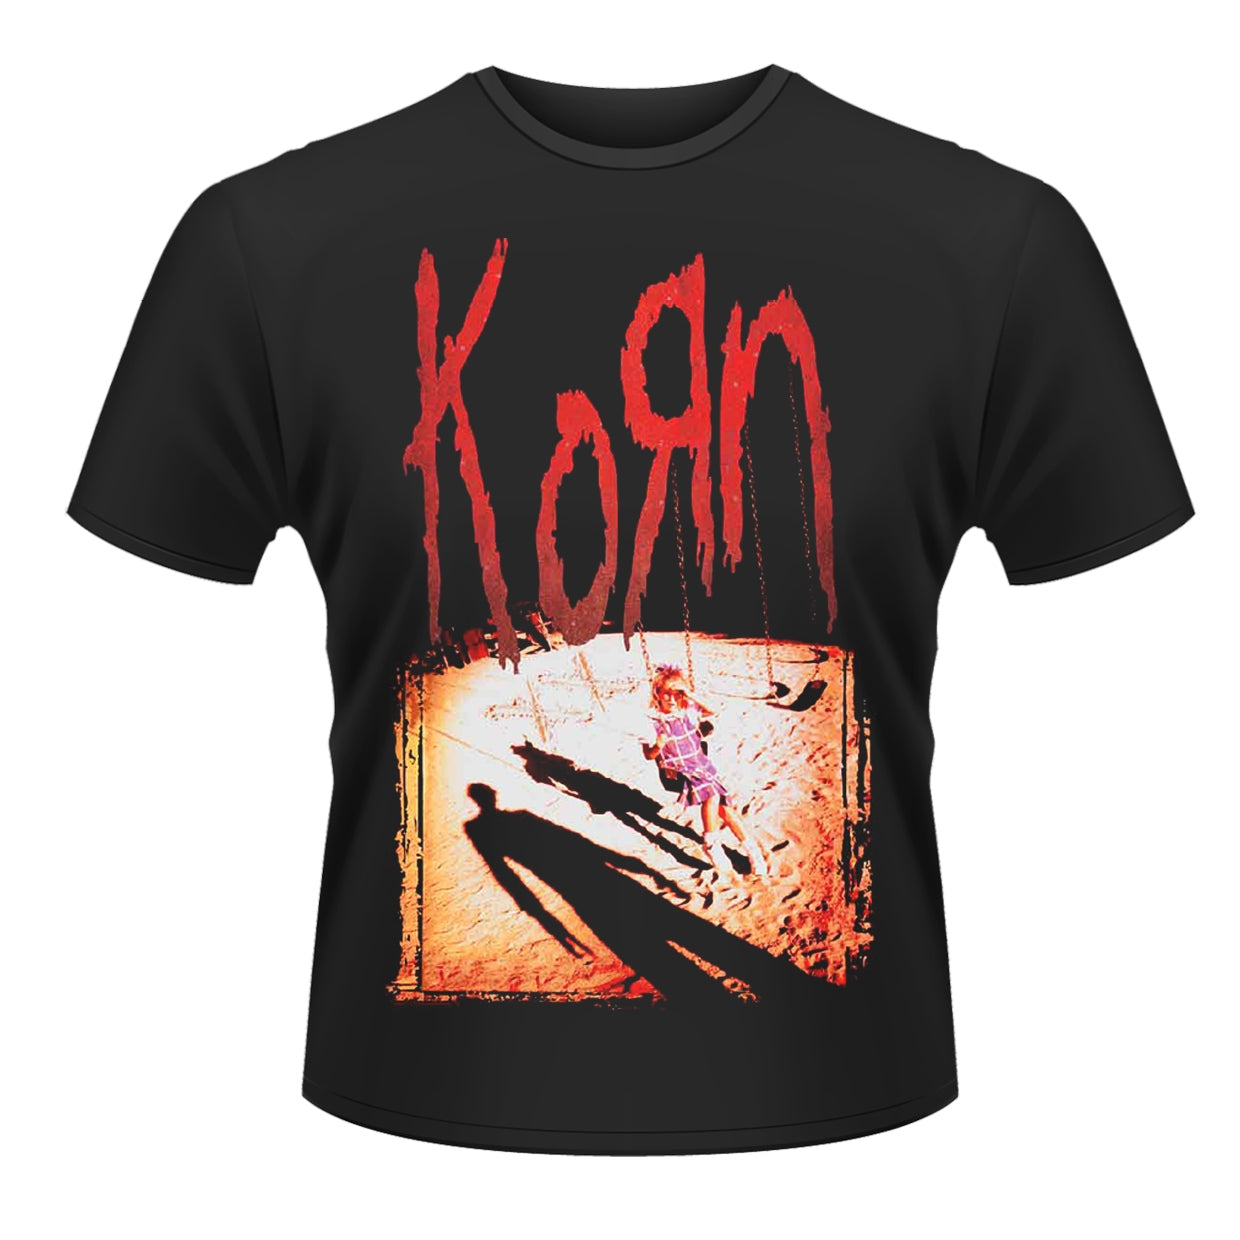 Korn "Korn" T shirt